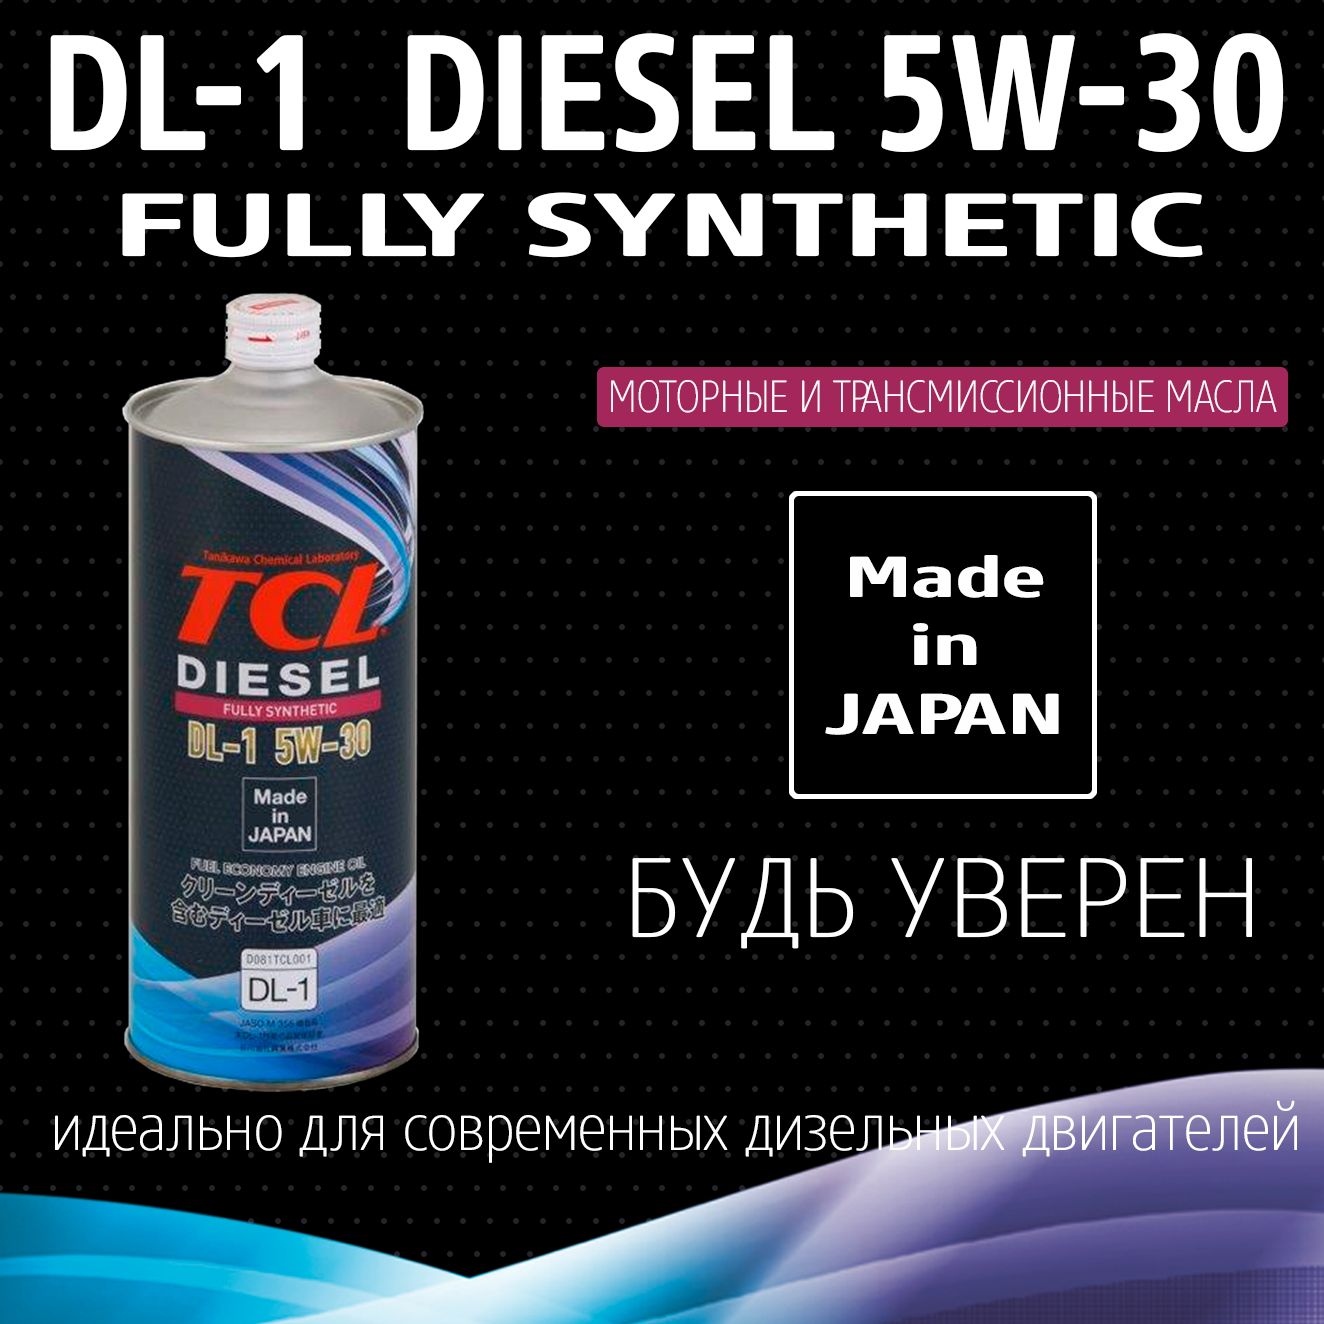 Масло ТСЛ 5в30. TCL масло моторное 5w-30. Масло для дизельных двигателей TCL Diesel, fully Synth, DL-1, 5w30, 1л. Моторное масло TCL 5w-30 DL-1.